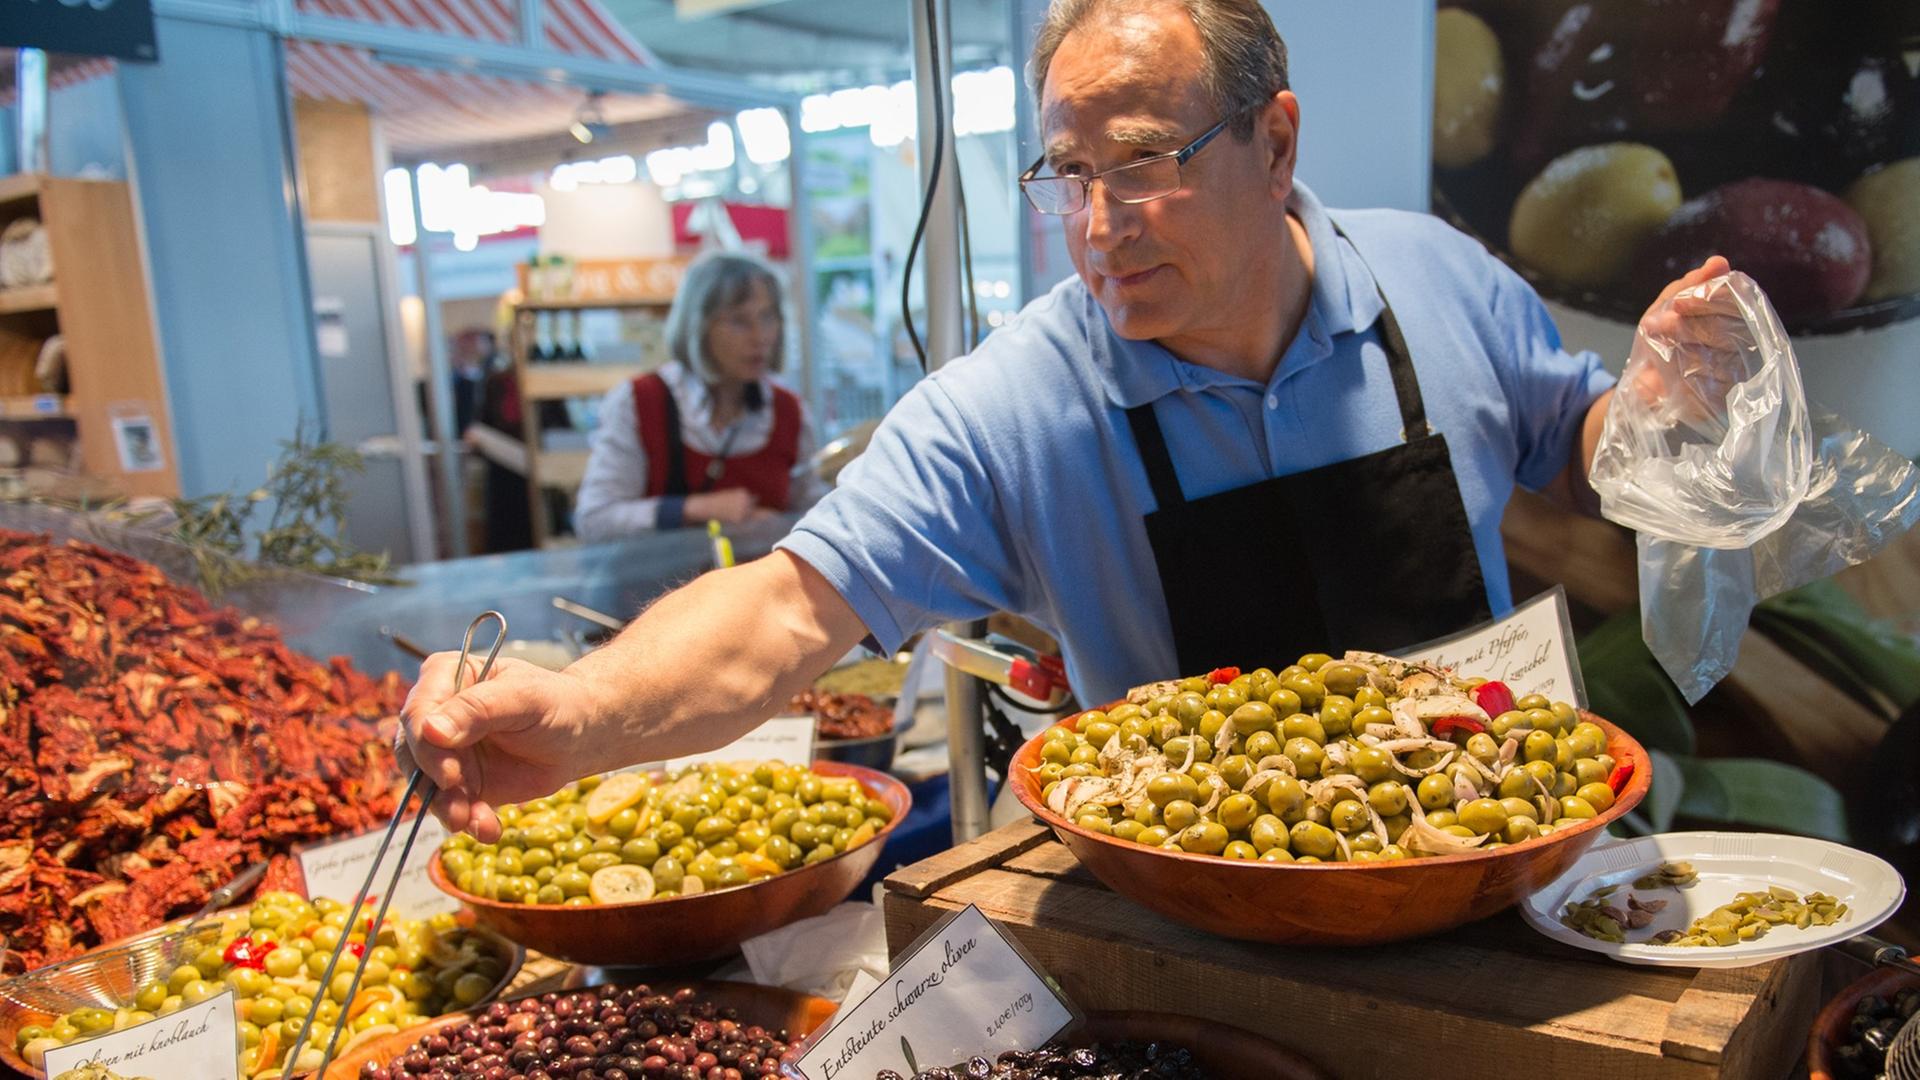 Ein Mann mit Schürze steht hinter einem Verkaufsstand mit Oliven und füllt welche davon in eine Tüte.